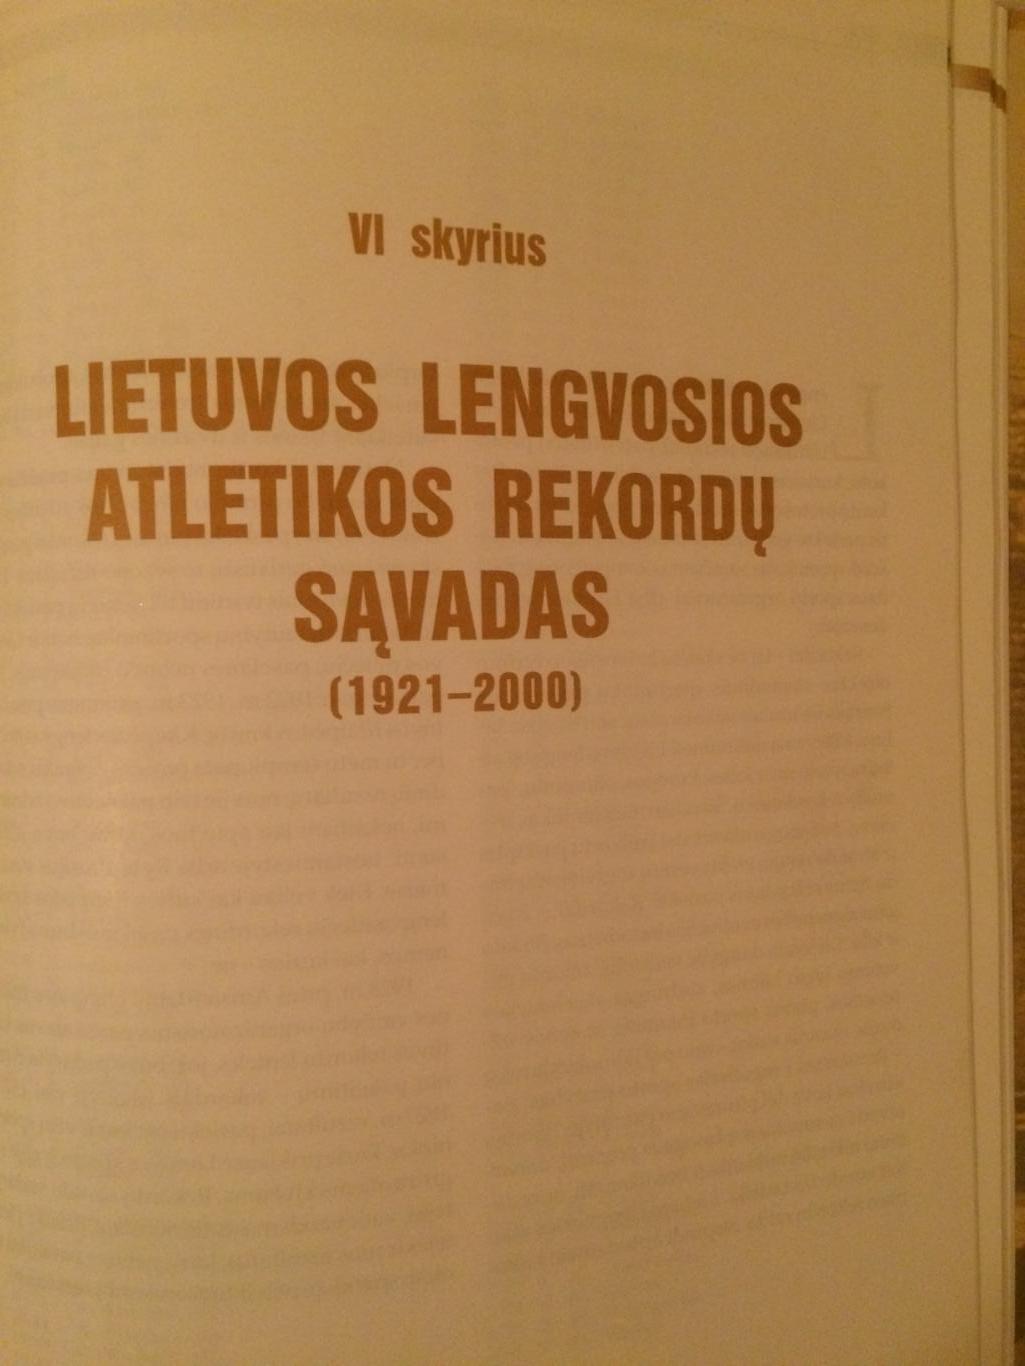 Литовская легкая атлетика 20 век 6